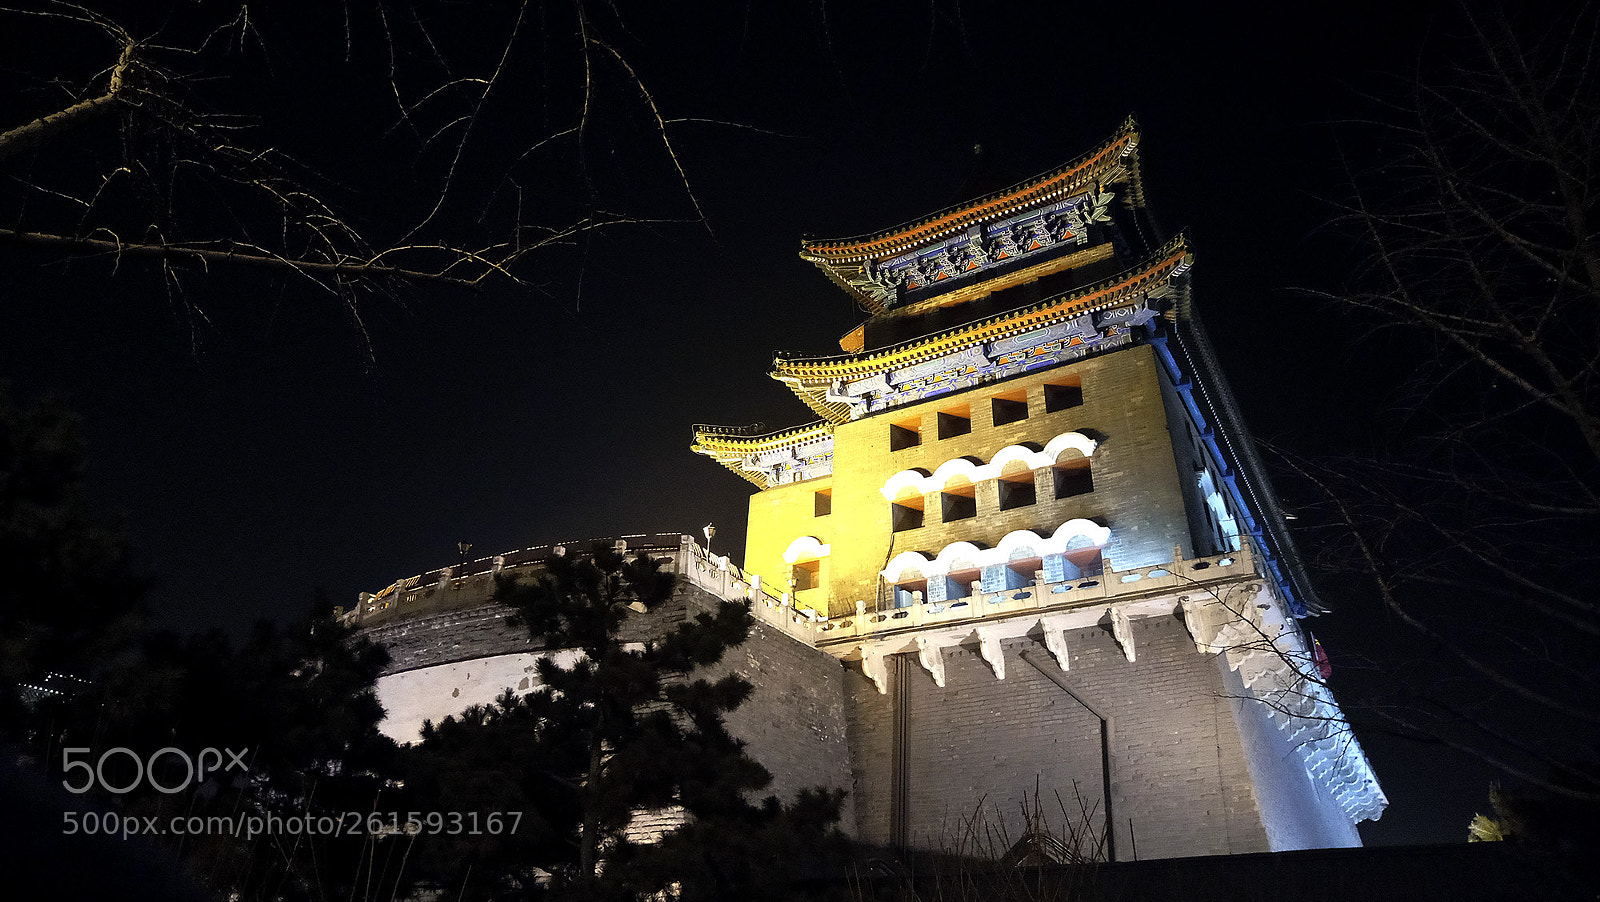 Meizu M570C sample photo. Zhengyangmen gate 正阳门 photography